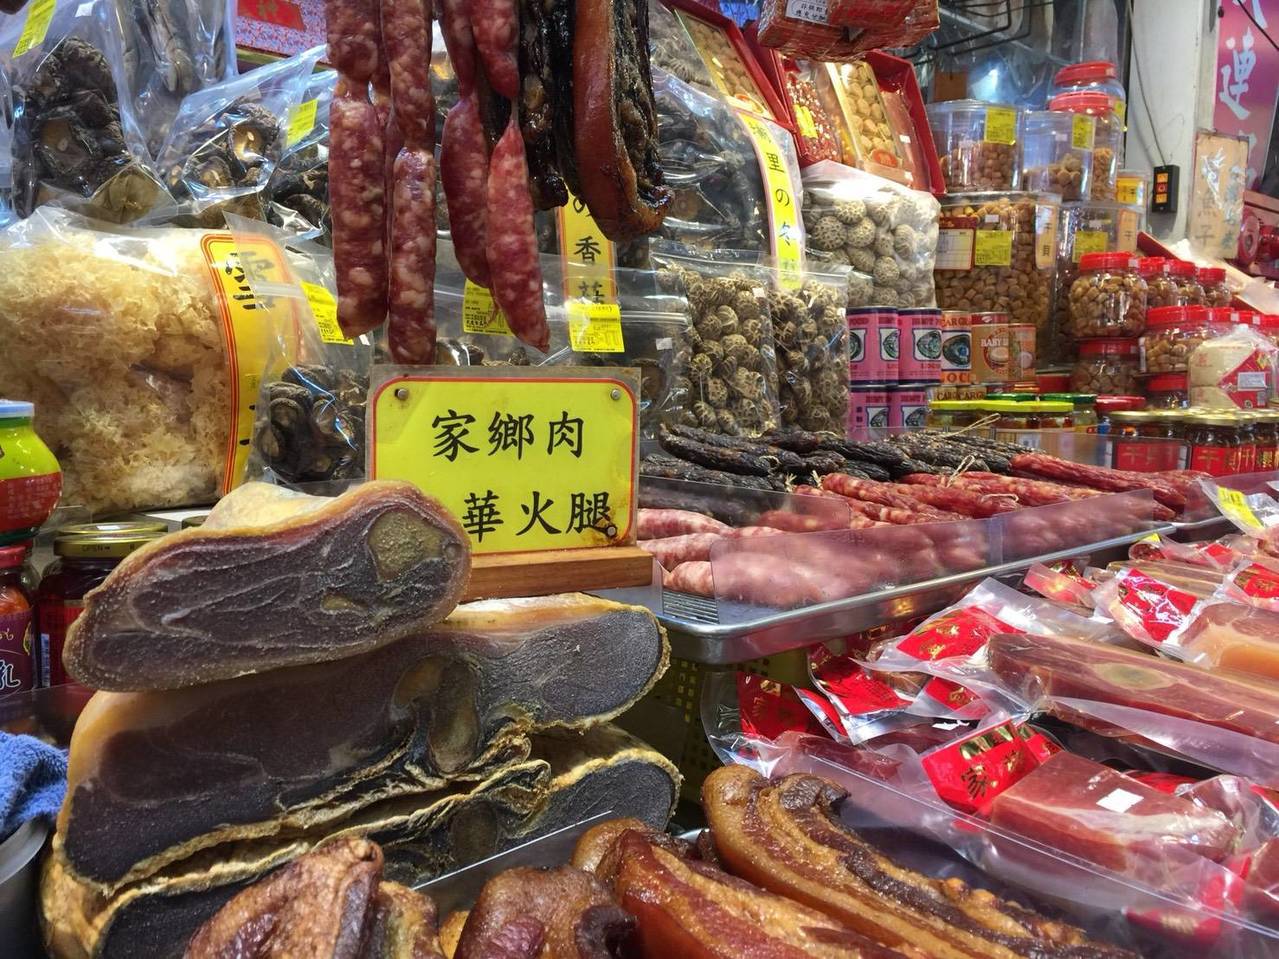 傳統市場到處都買的到香腸臘肉、金華火腿，因應中國大陸非洲豬瘟疫情，憂心民眾商家可能夾帶大陸的肉製品來台，農委會、衛福部、關務署等單位日前已經啟動傳統市場聯合稽查工作。(此為示意圖，為台灣肉品，非中國大陸進口肉品。) 記者彭宣雅/攝影